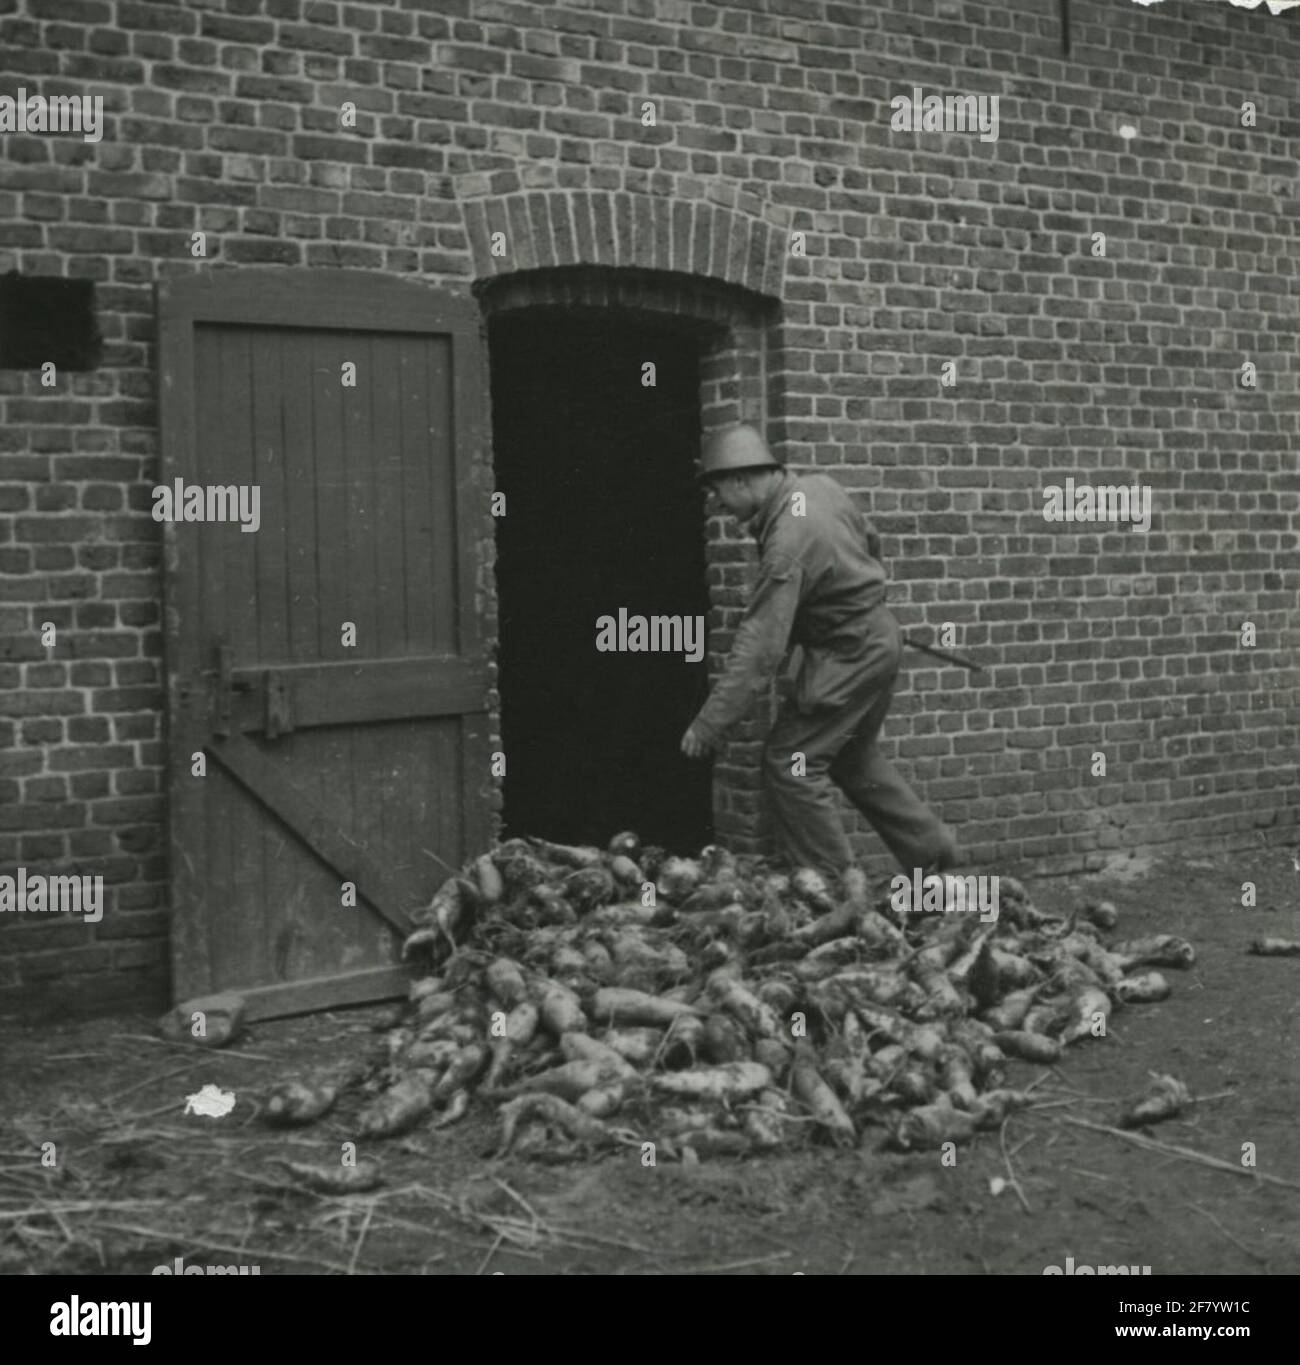 Troupes de choc du commandement Limbourg / Régiment Limbourg pendant la  Seconde Guerre mondiale. Soldat avec un casque d'avant-guerre, avec une  grange pleine de betterave à sucre Photo Stock - Alamy